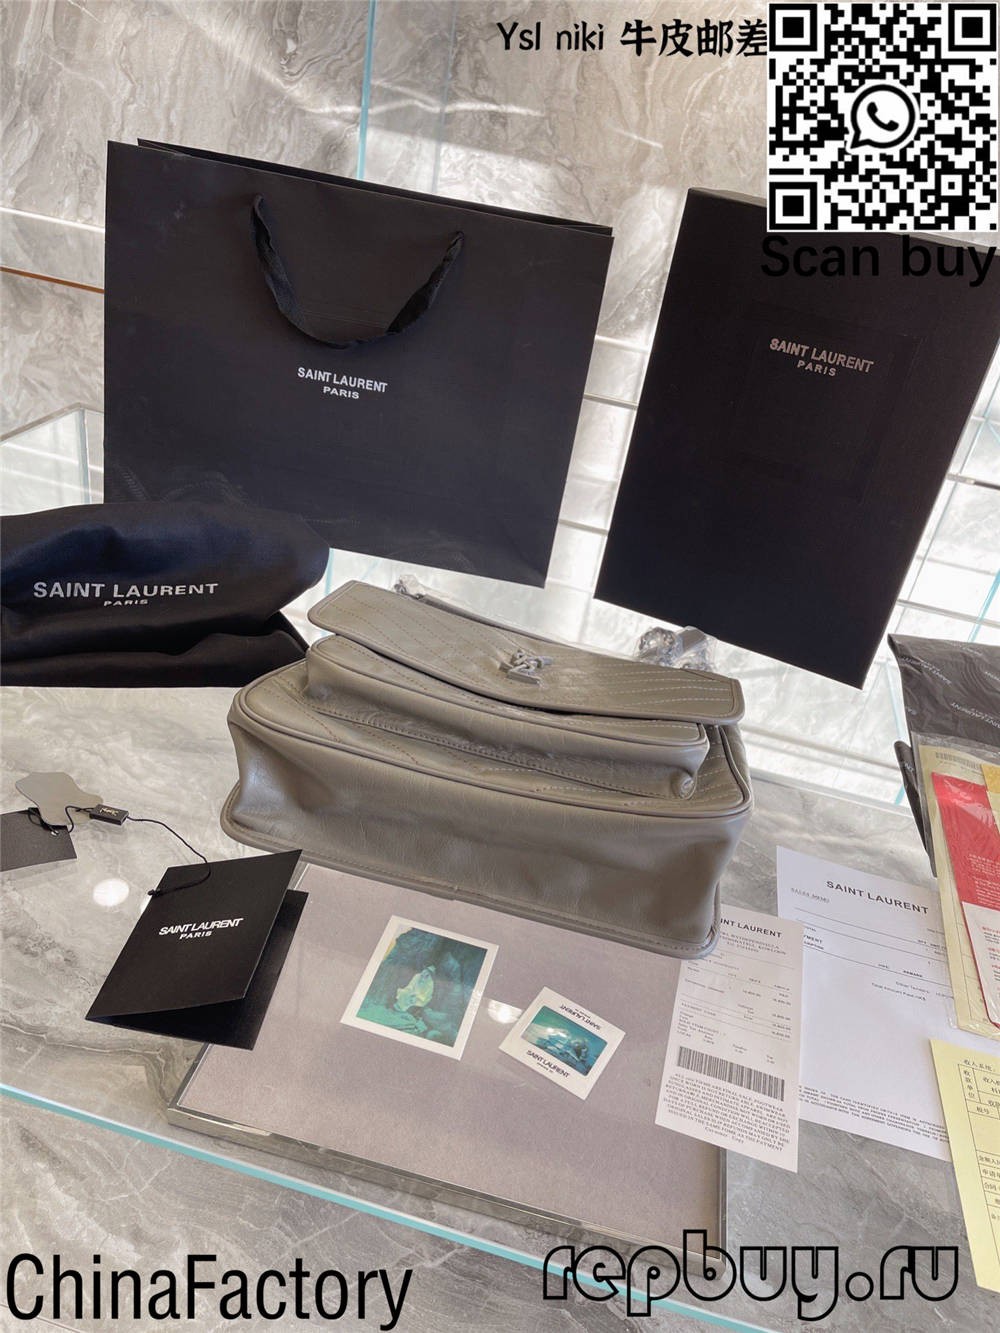 I 12 migliori sacchetti di replica di YSL per cumprà (aghjurnatu 2022) - Best Quality Fake Louis Vuitton Bag Online Store, Replica designer bag ru